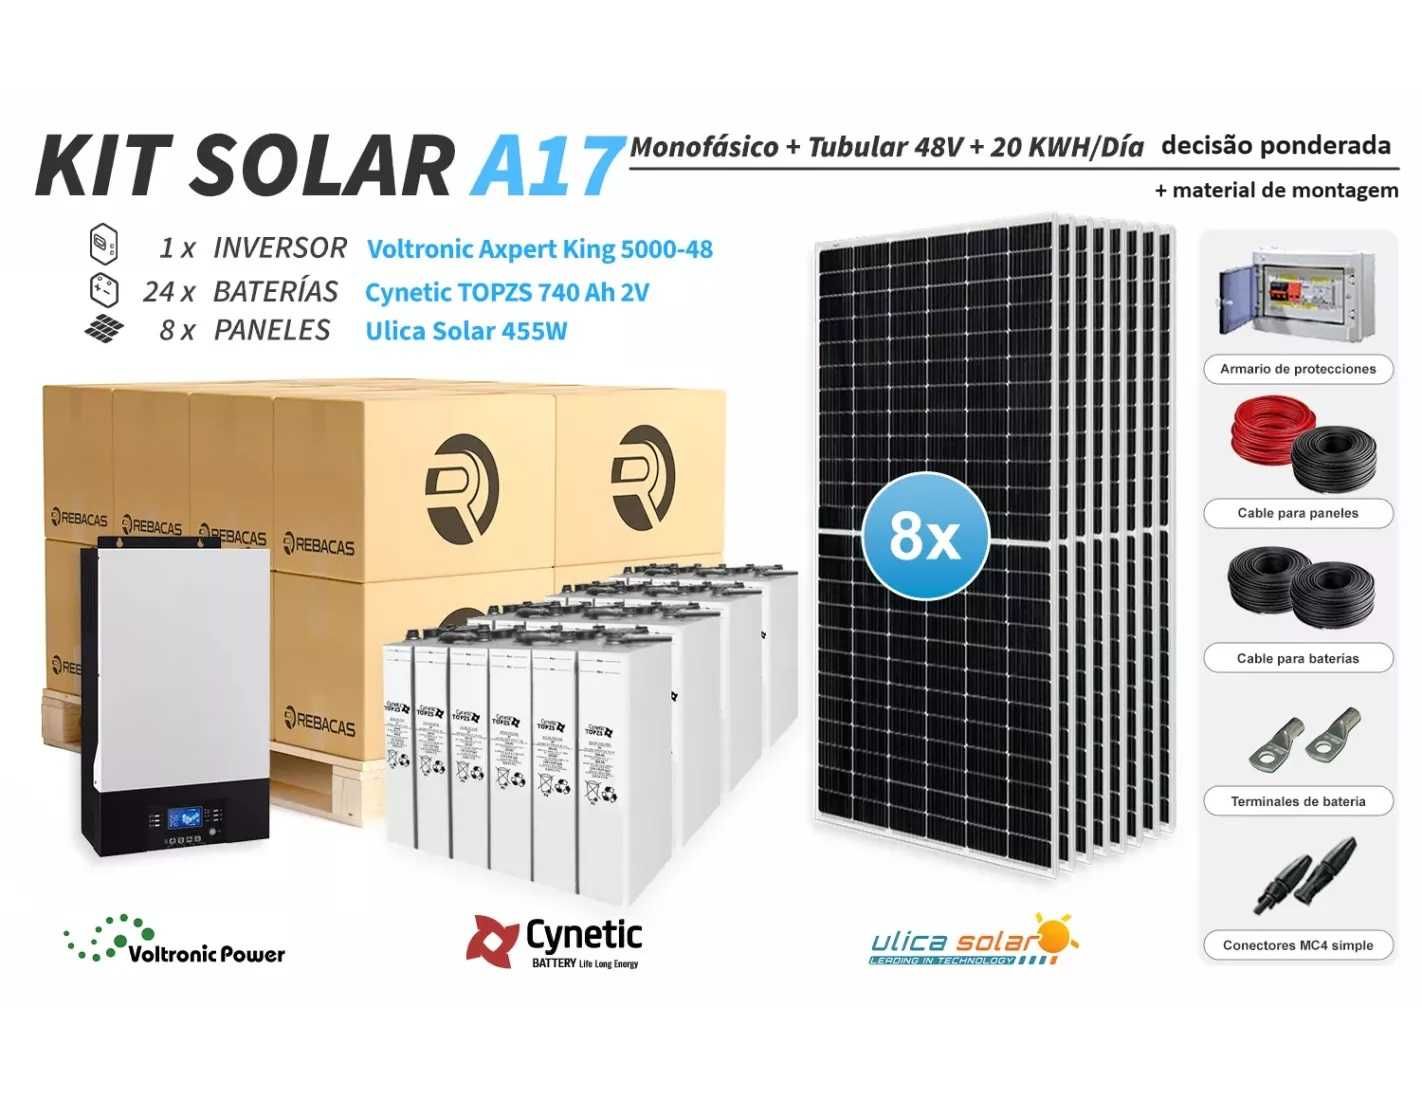 O kit solar isolado 17 produz até 20.000 Wh por dia